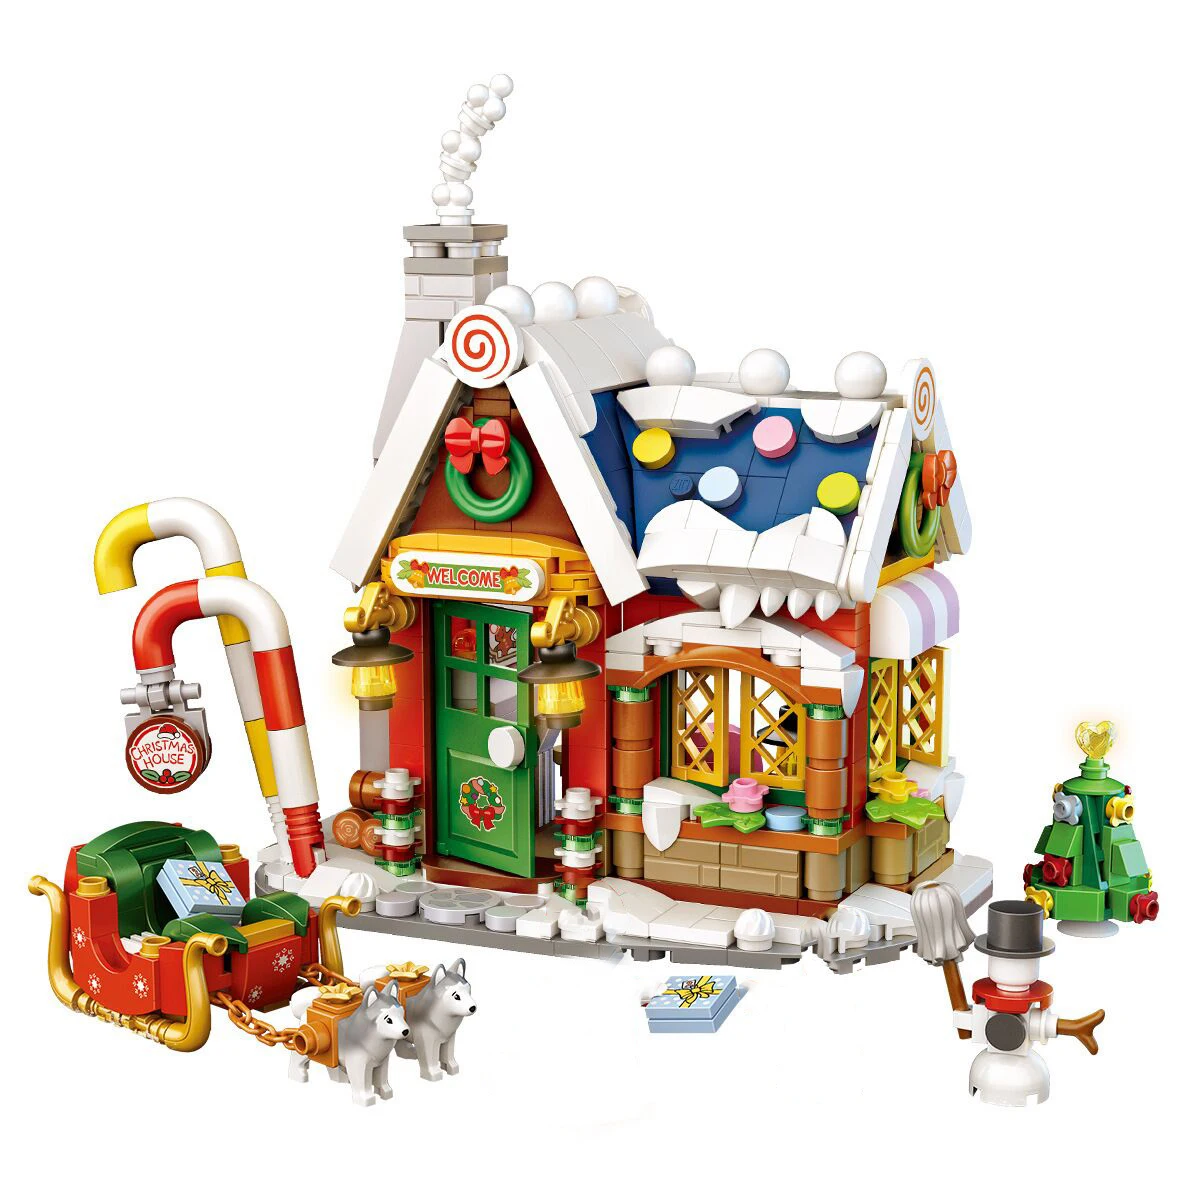 

Город зима деревня Санта Клаус Рождественская елка пряничный домик мини строительный блок Moc модель Diy Кирпичи игрушки подарок